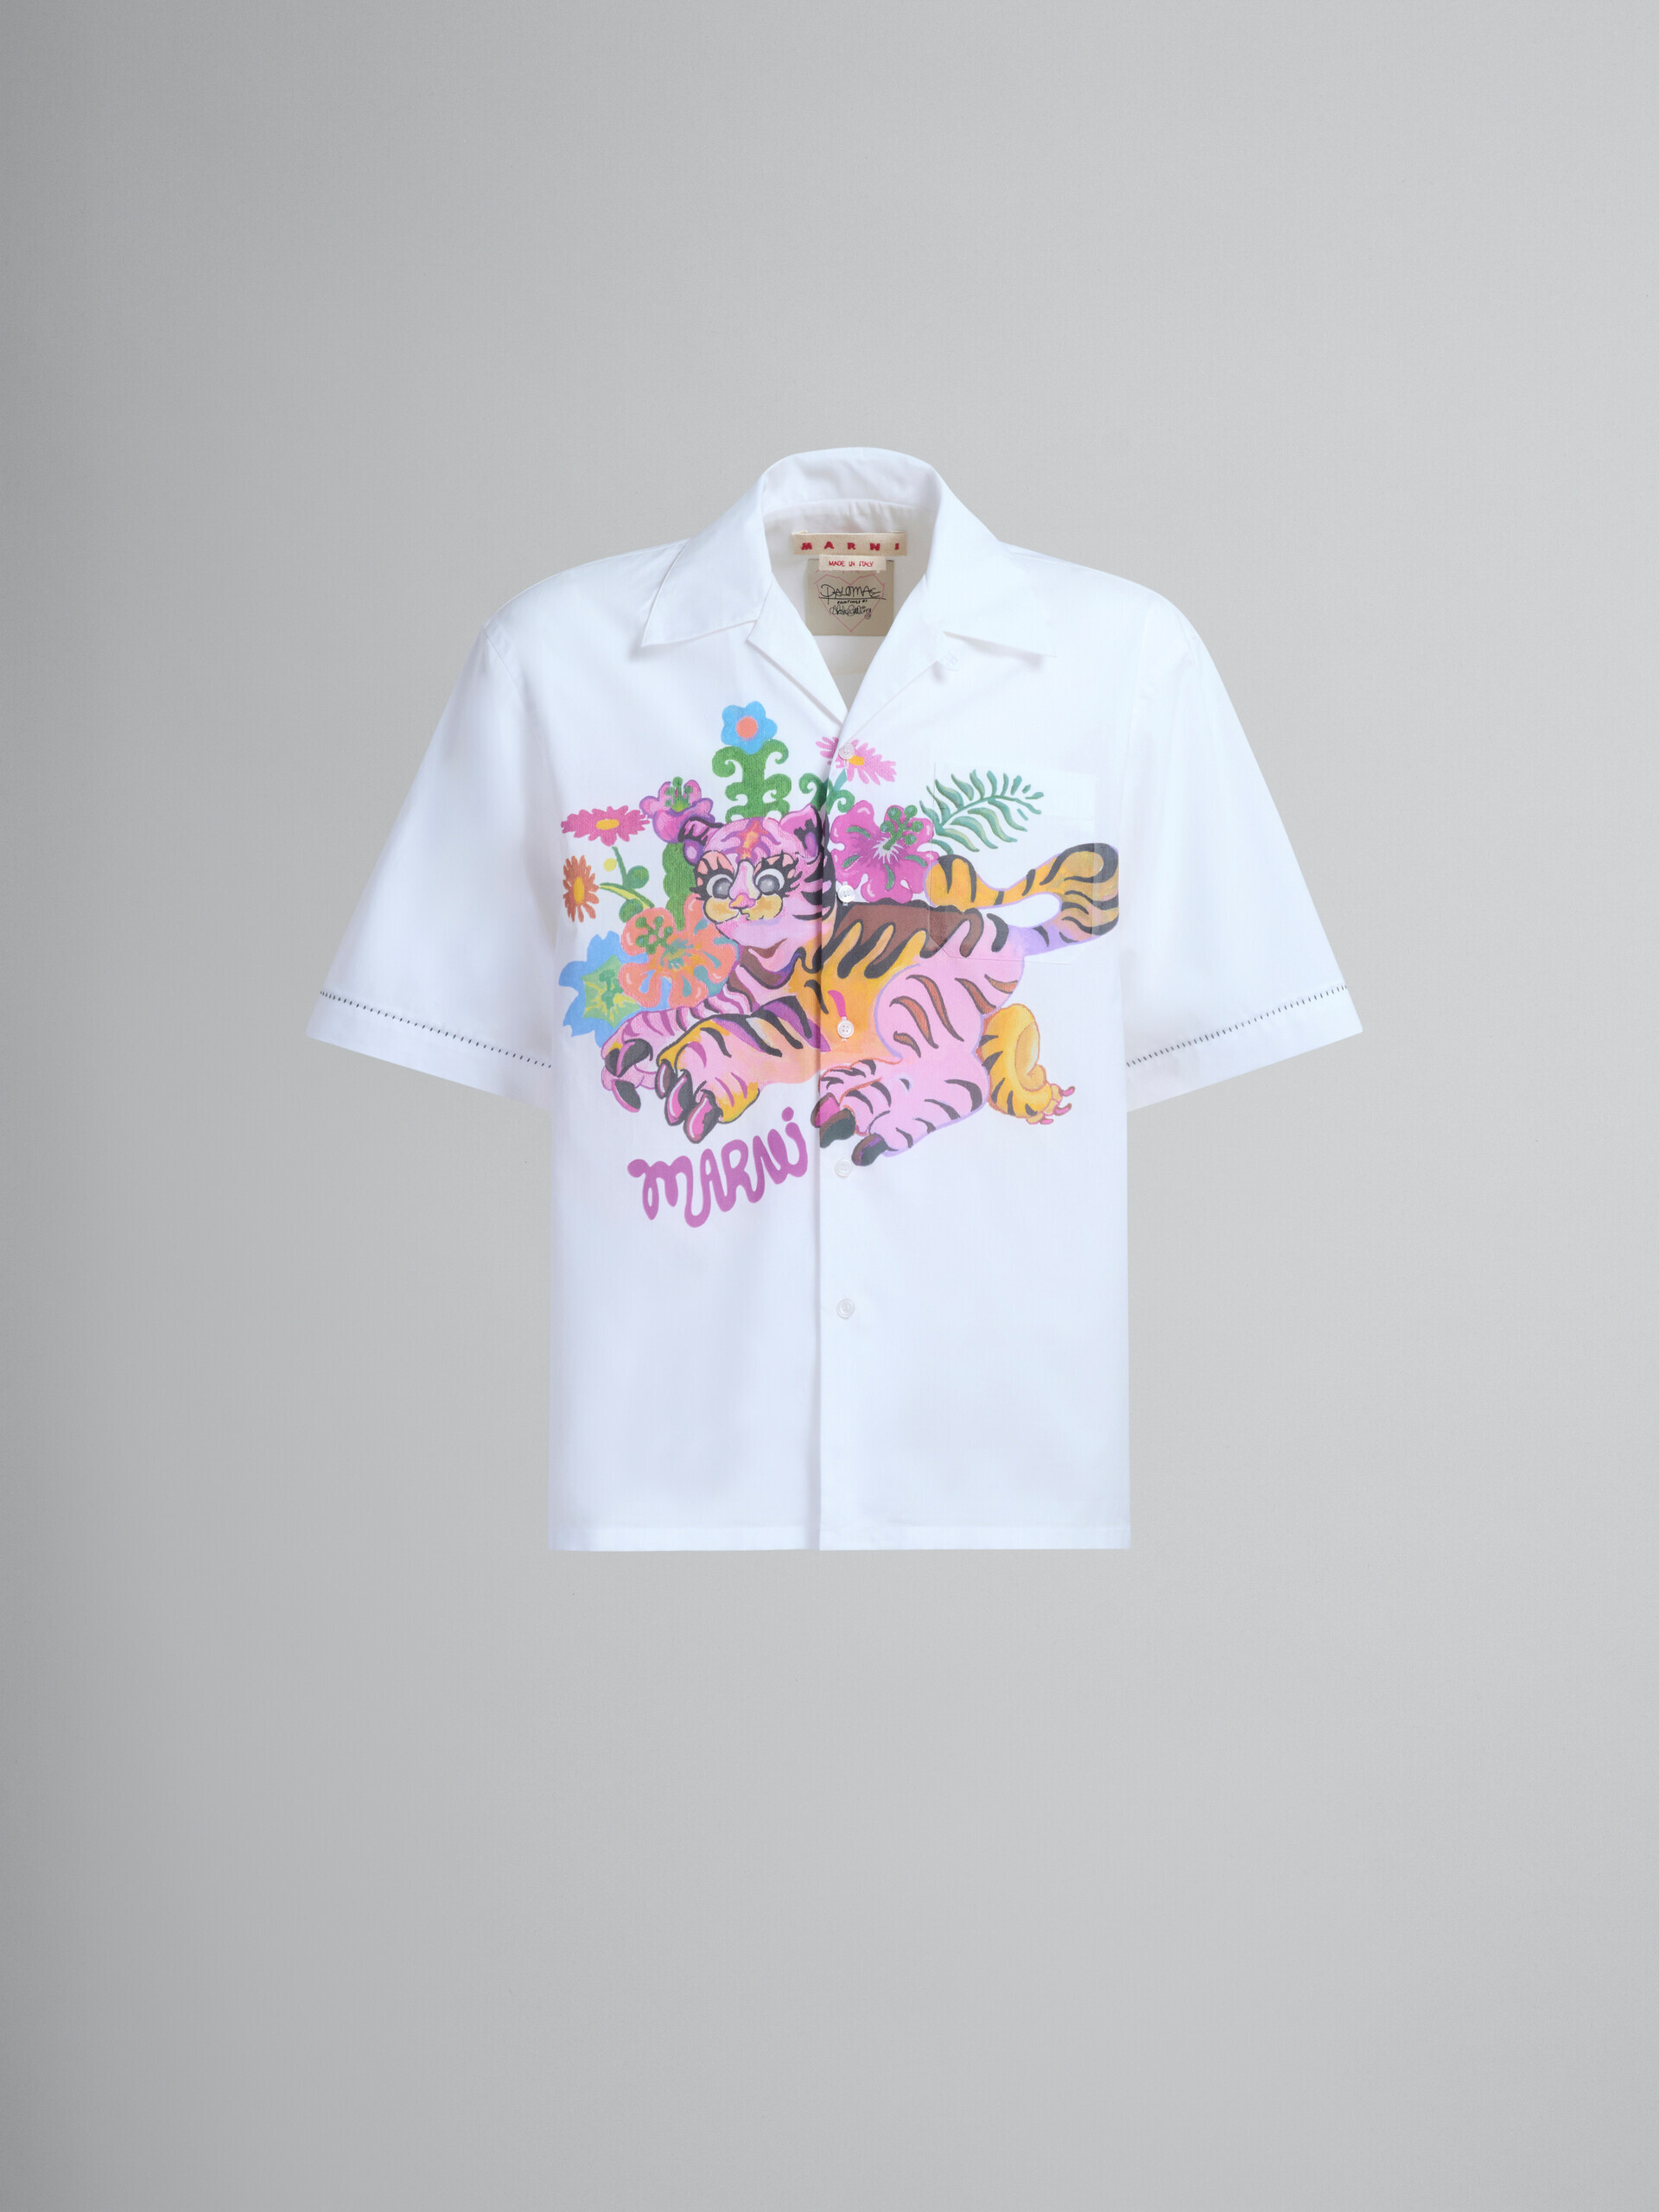 プリント入りホワイトのオーガニックポプリン製ボーリングシャツ - シャツ - Image 2